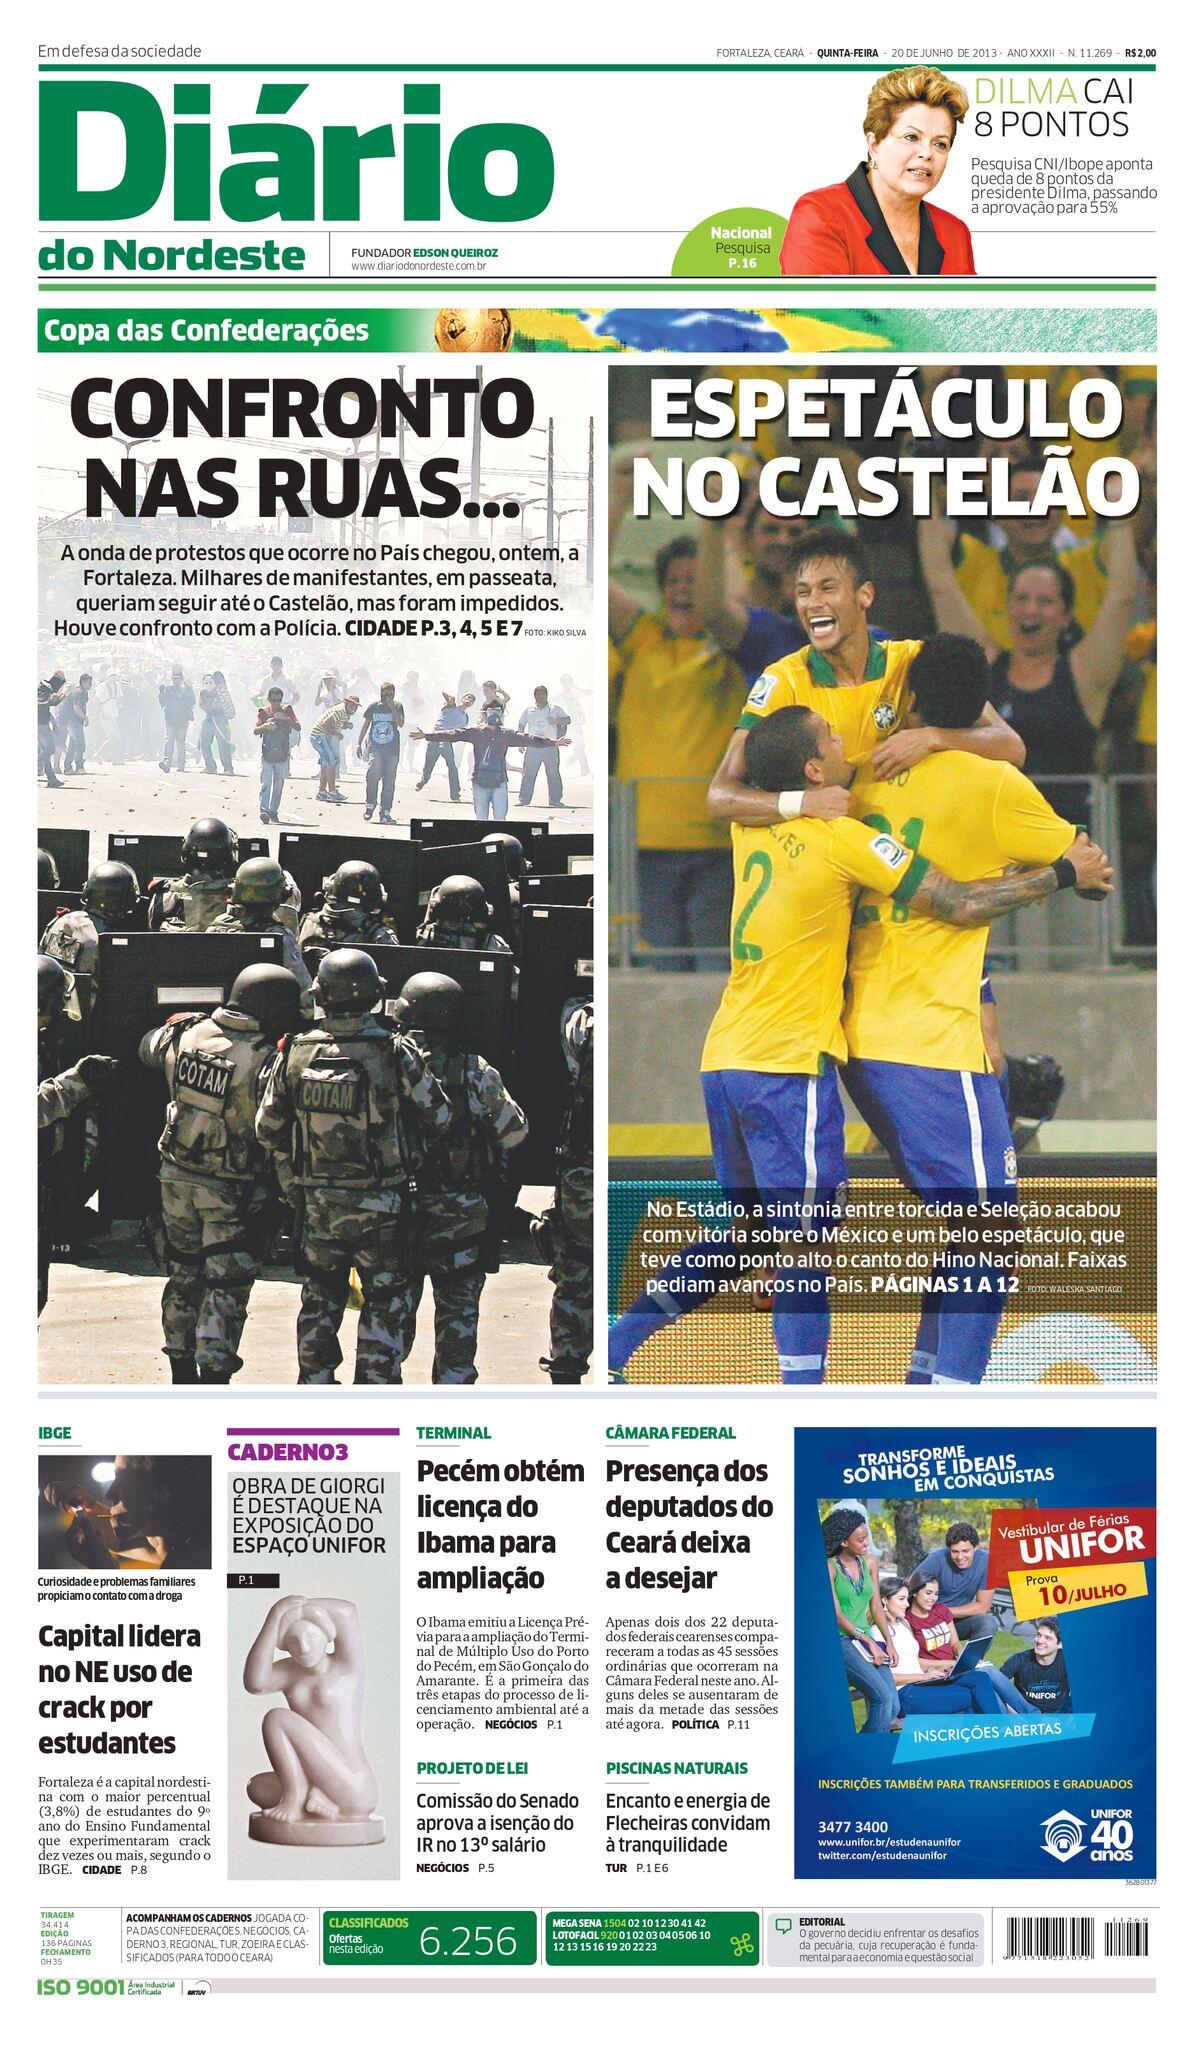 Capa do Diário do Nordeste do dia 20 de junho de 2013